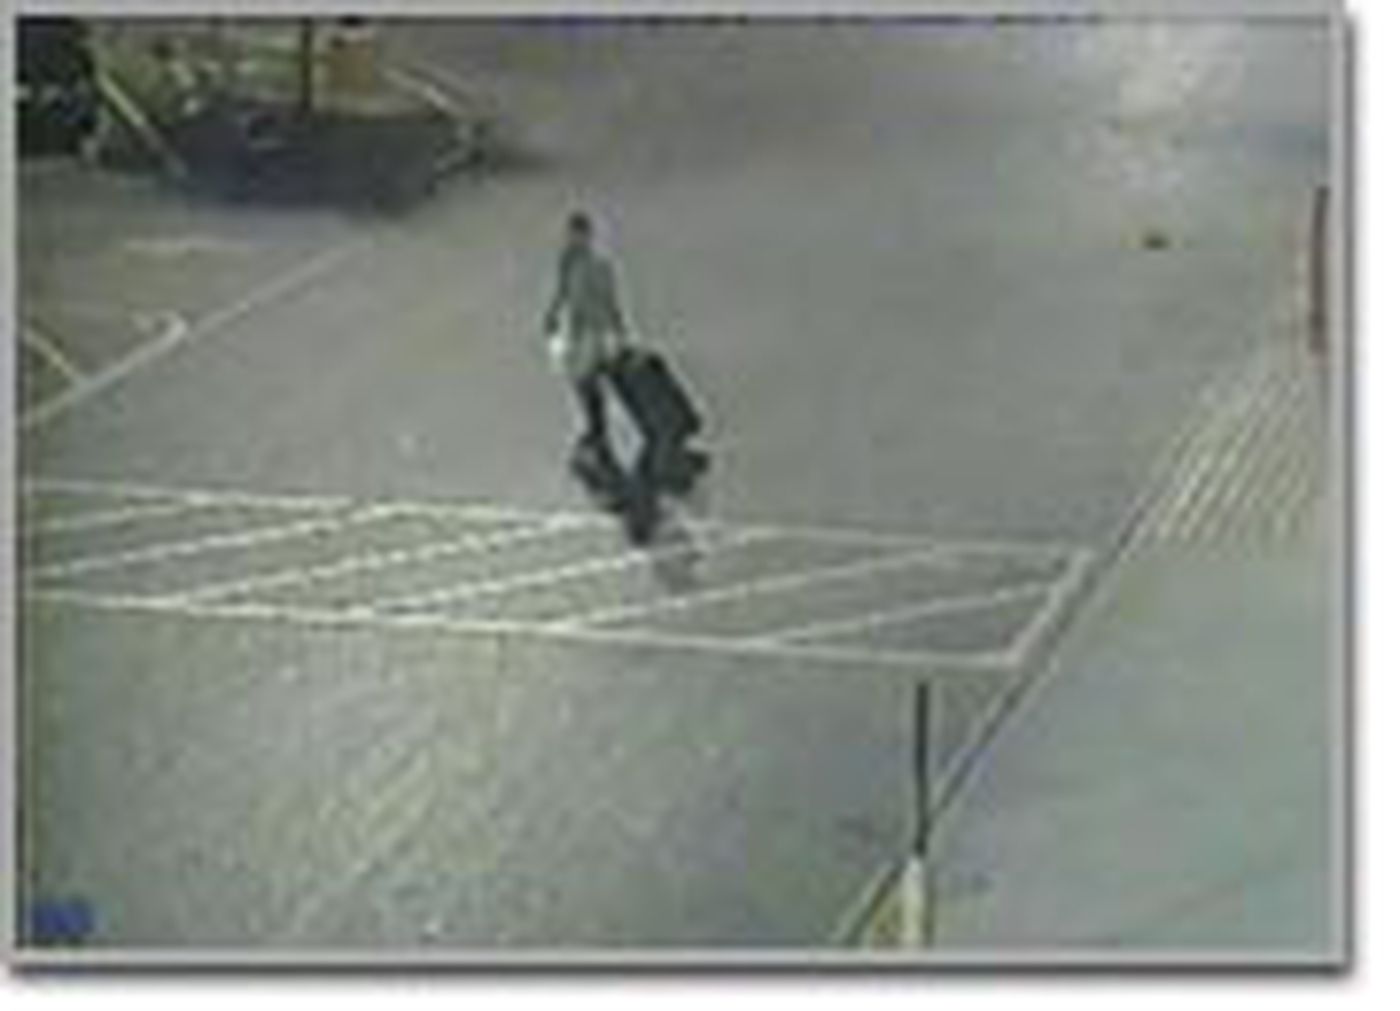 Hình ảnh trên camera cho thấy nghi phạm kéo theo chiếc vali và tiến về phía một chiếc xe tải sau khi mua hàng tại siêu thị.